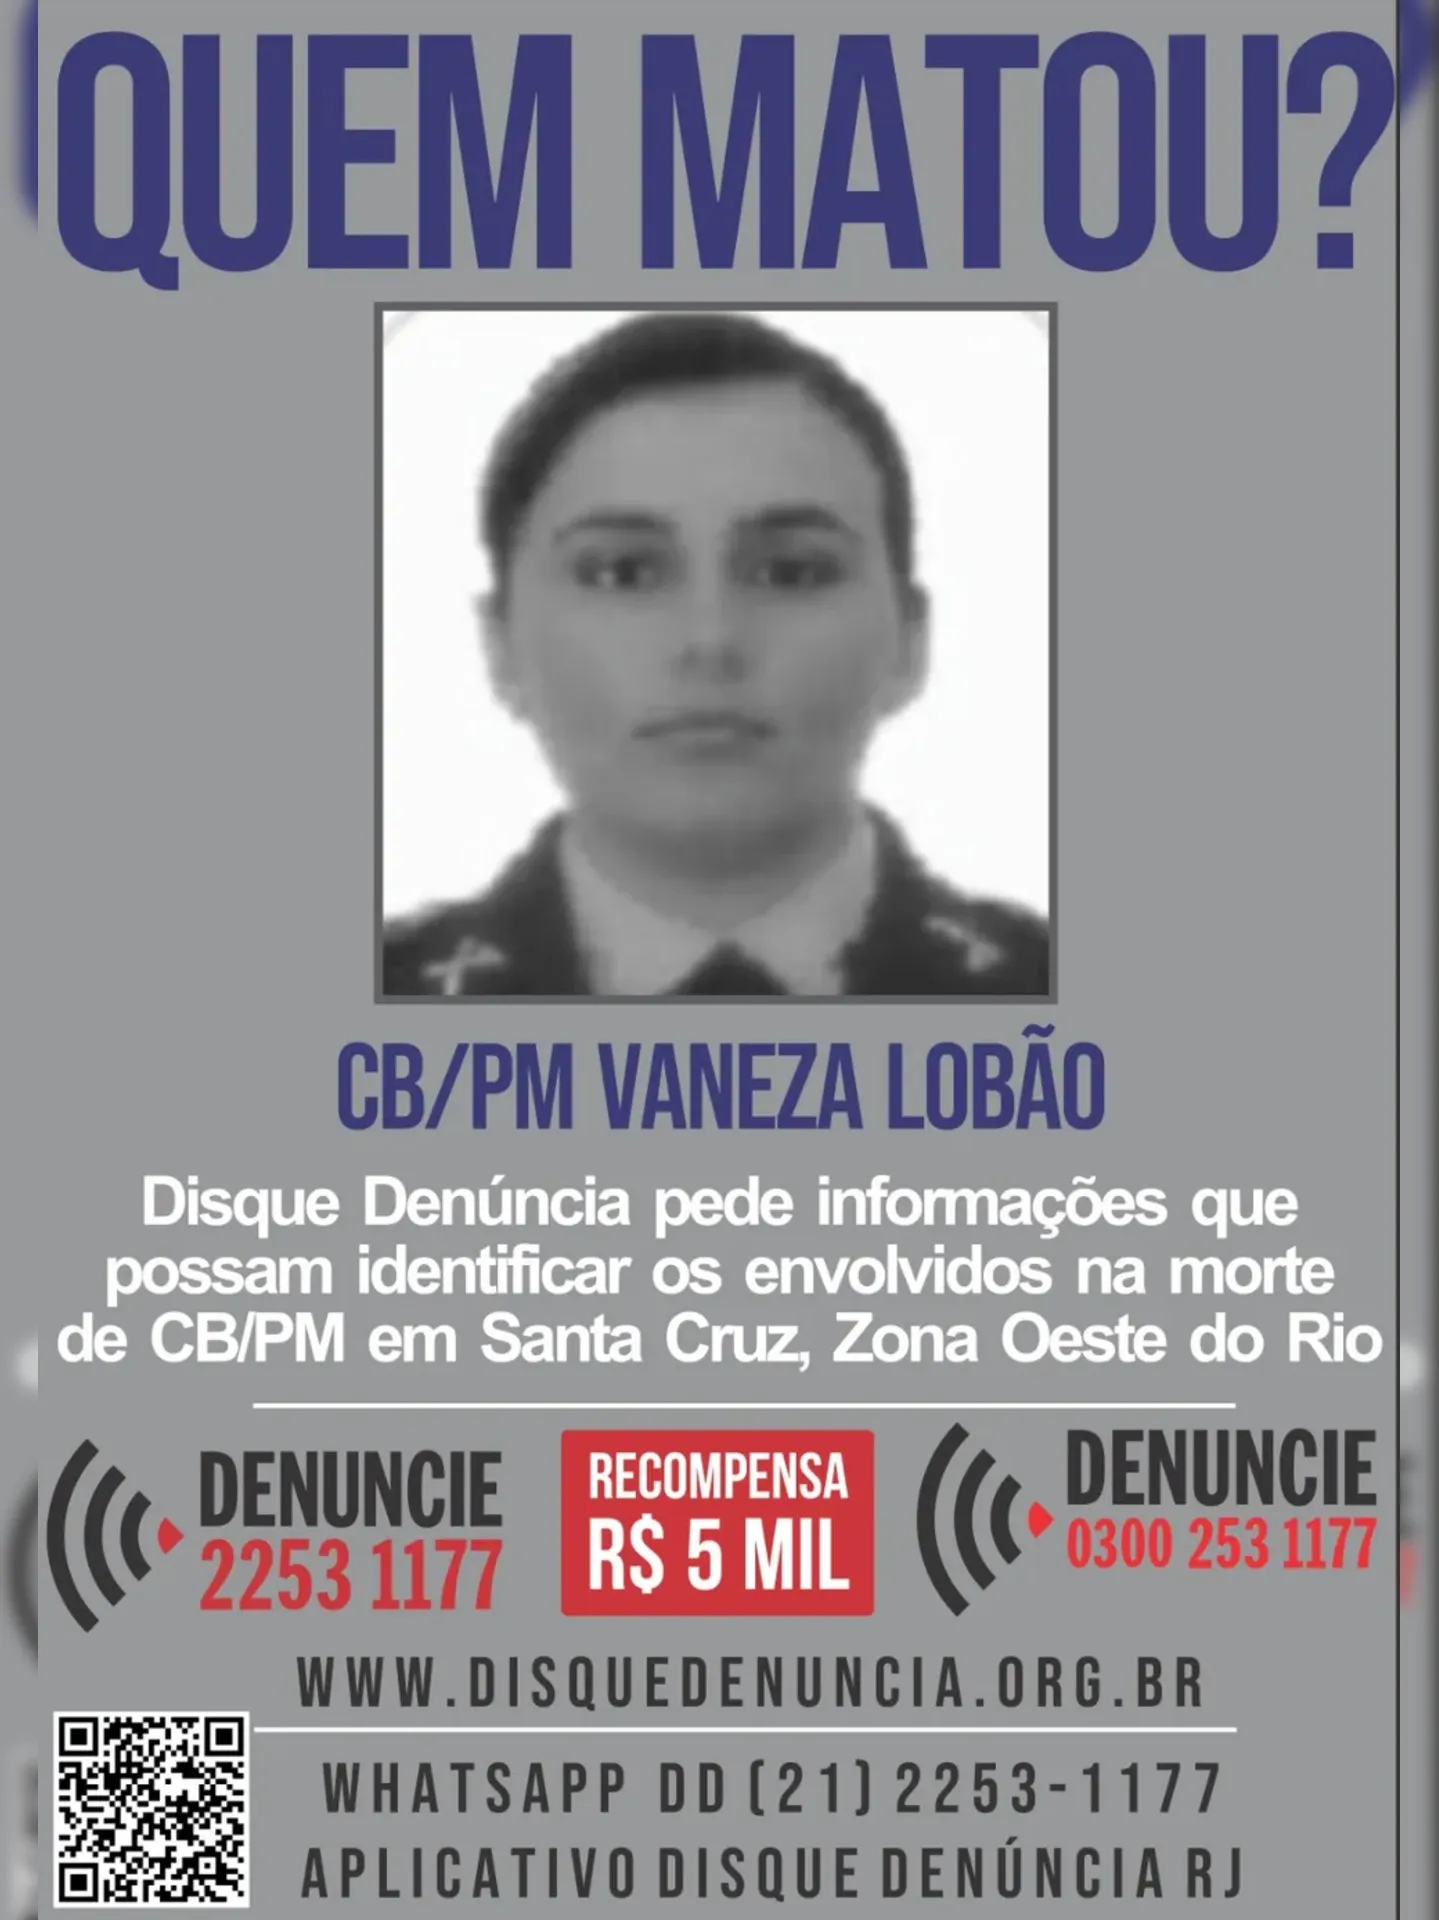 Disque Denúncia divulga cartaz pedindo informações sobre morte de policial